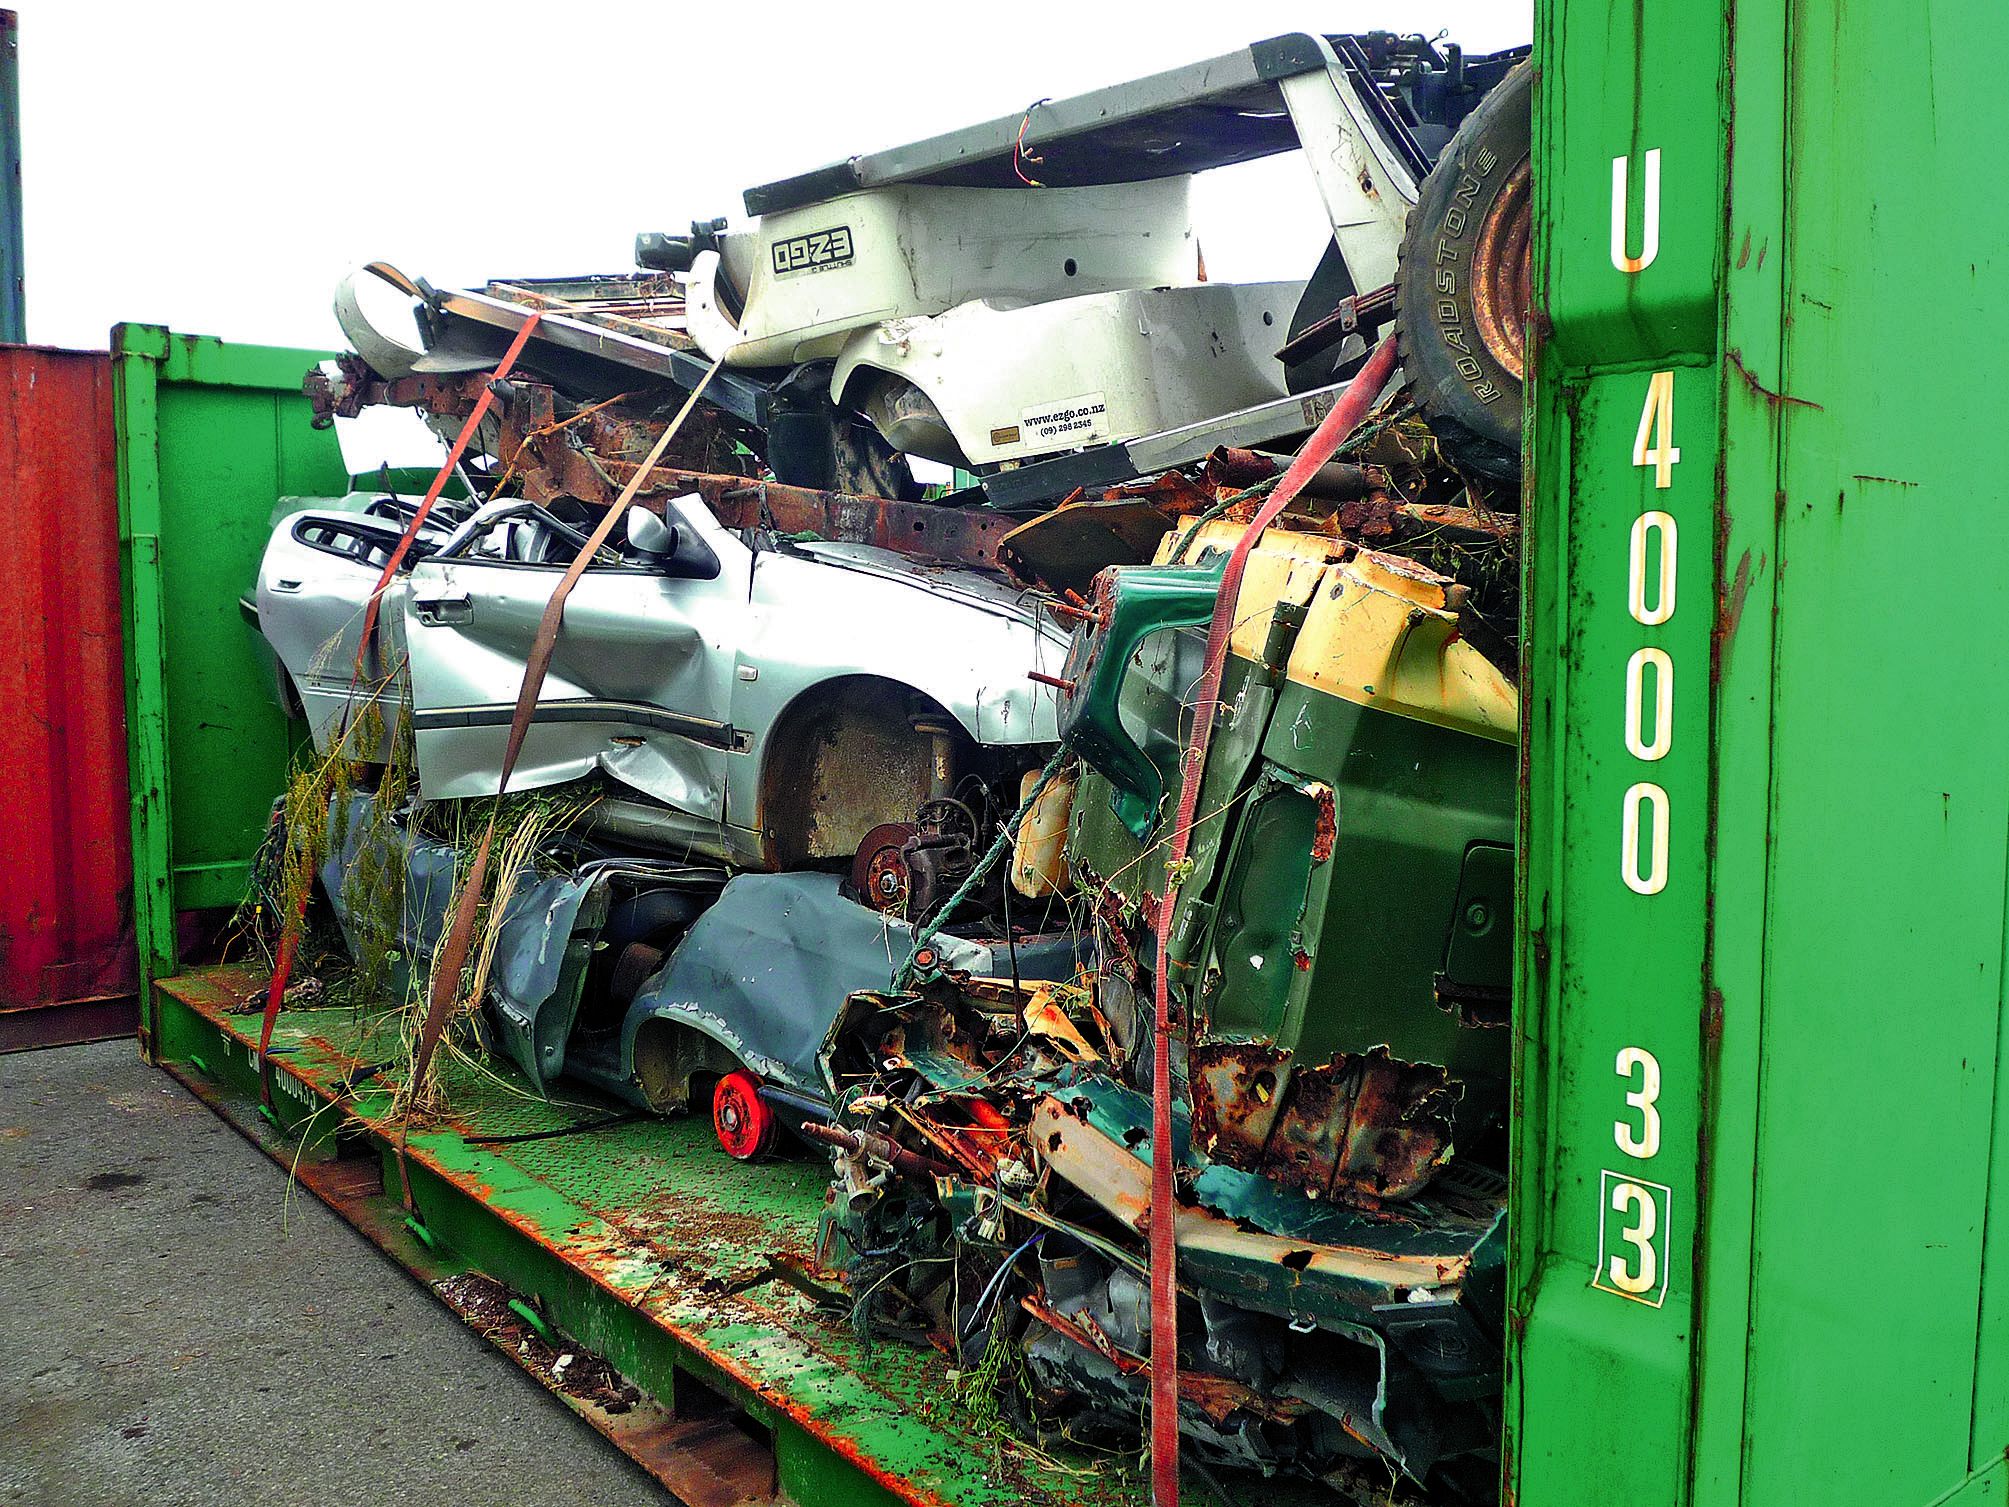 Trecodec récupère les voitures usagées. Elles font partie des déchets réglementés par la province Sud.Photo Trecodec